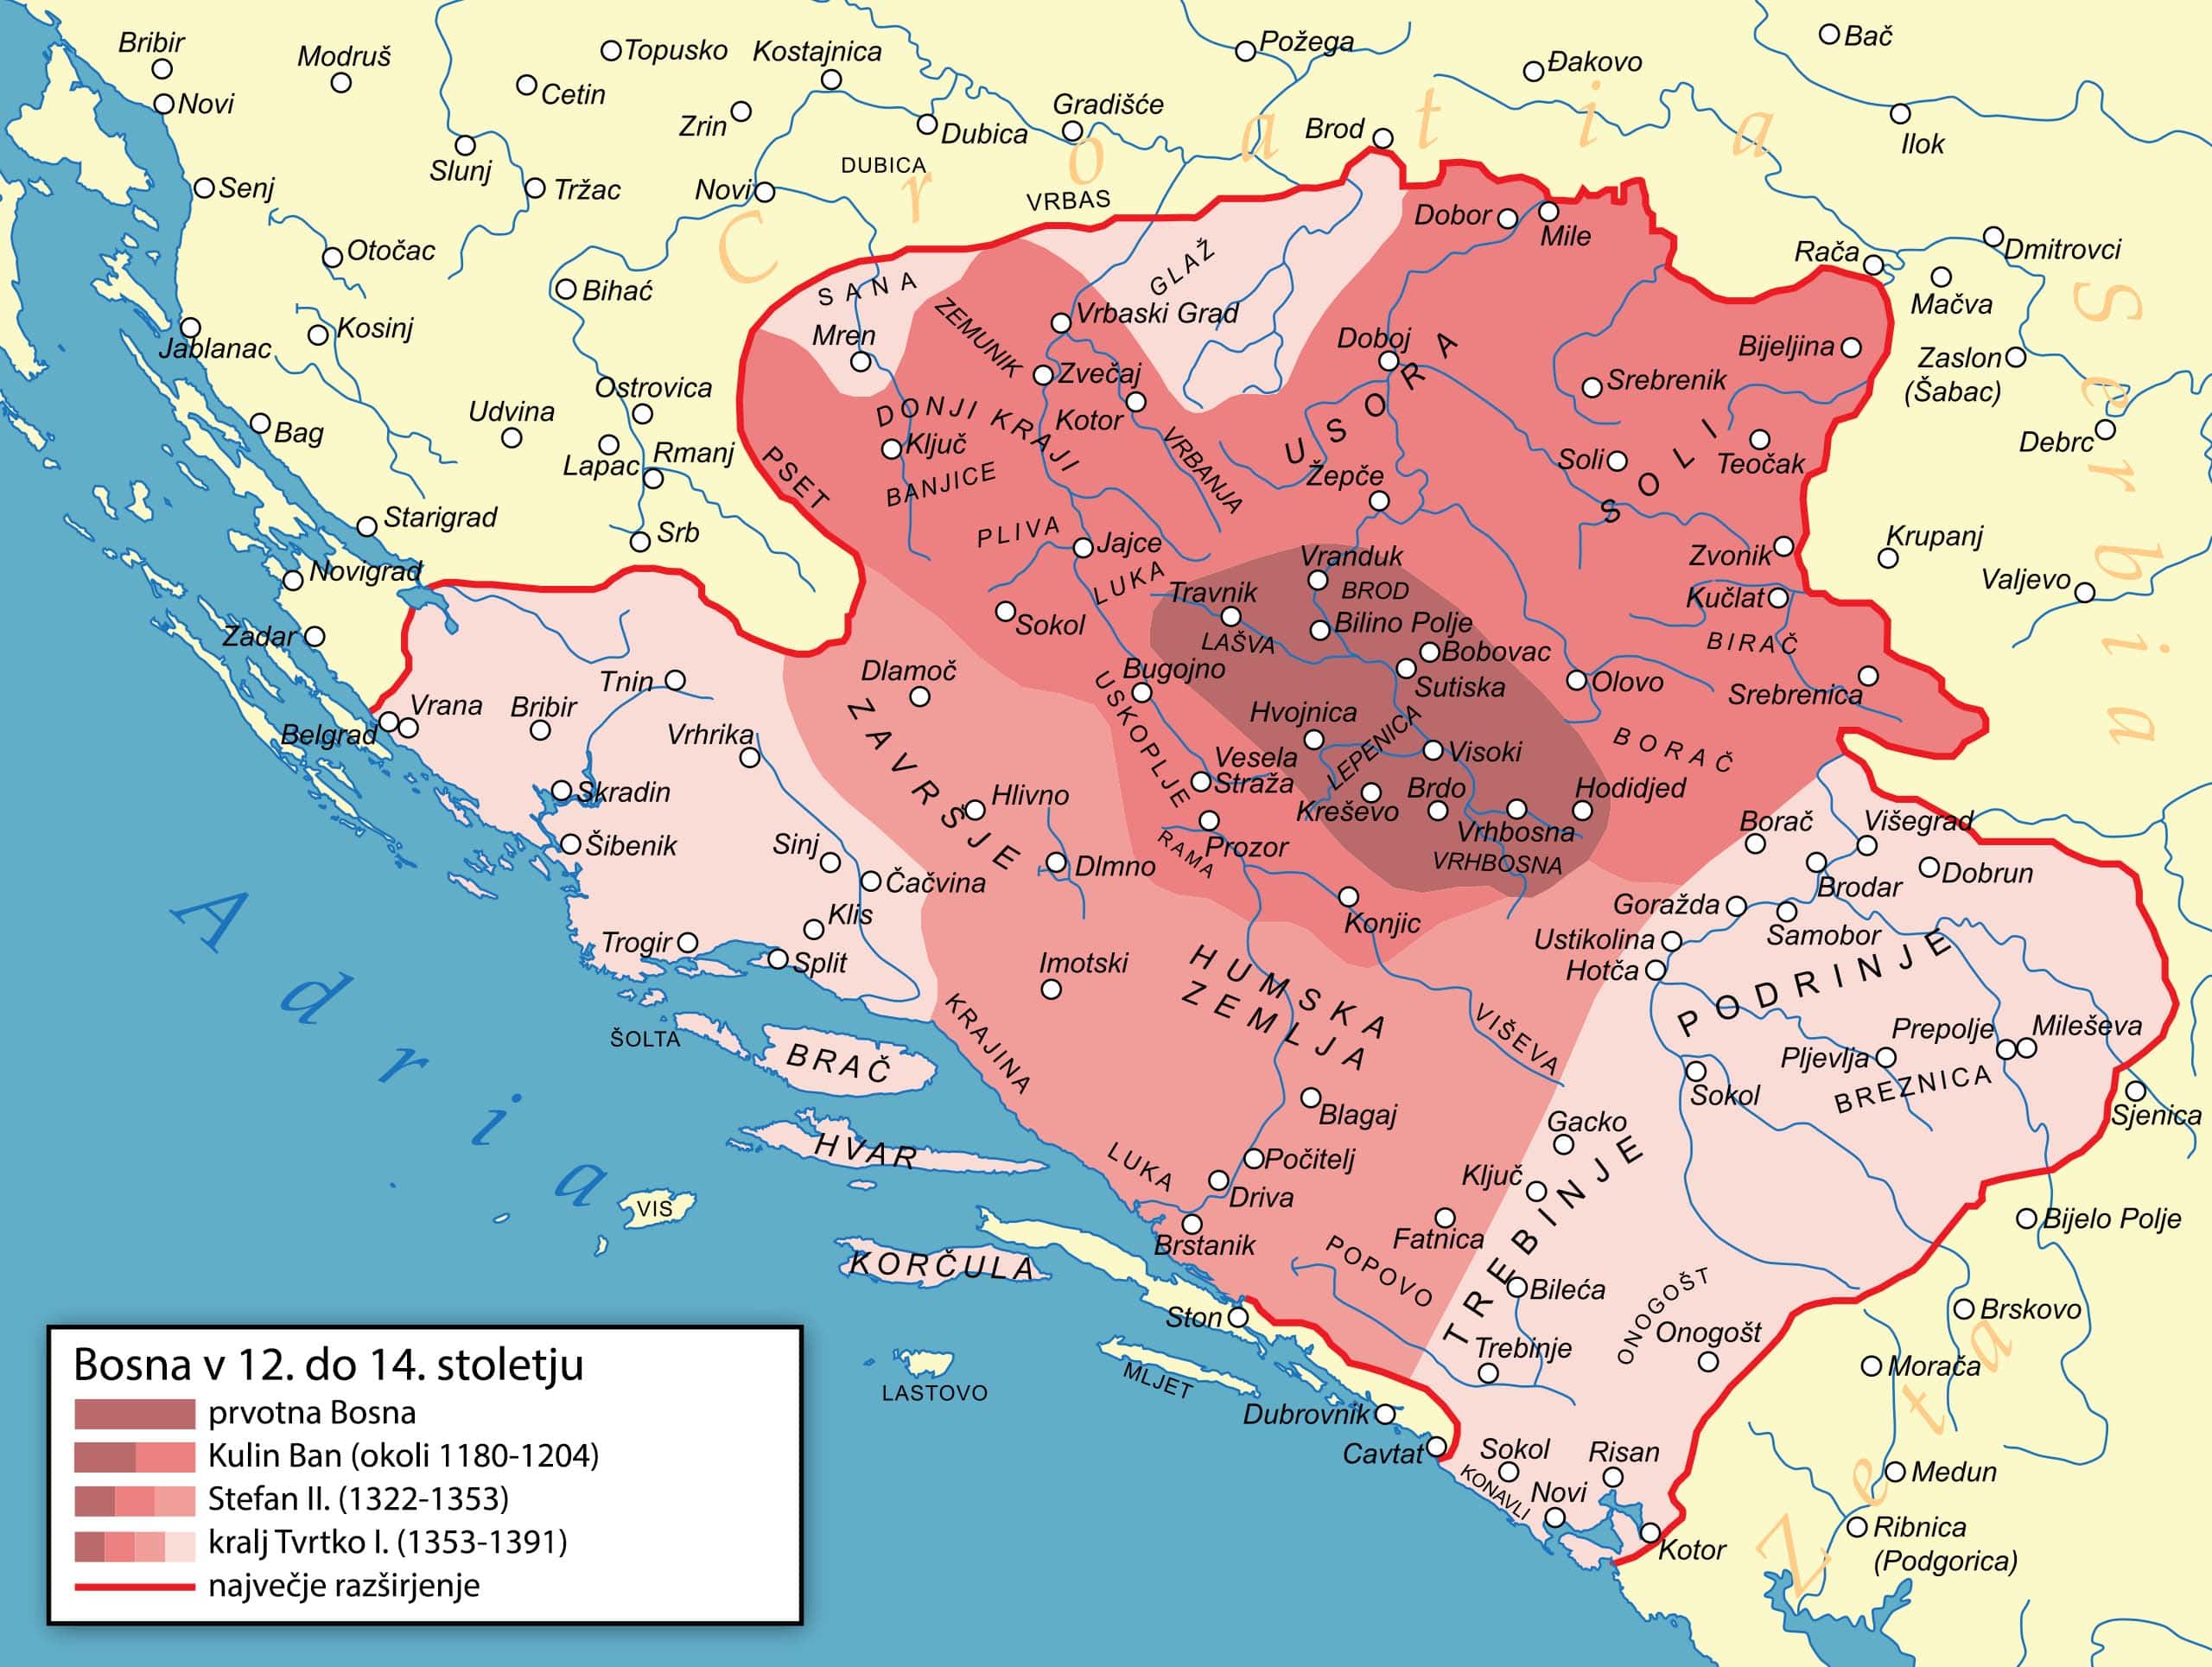 Širitev Kraljevine Bosne v 12.-14. stoletju